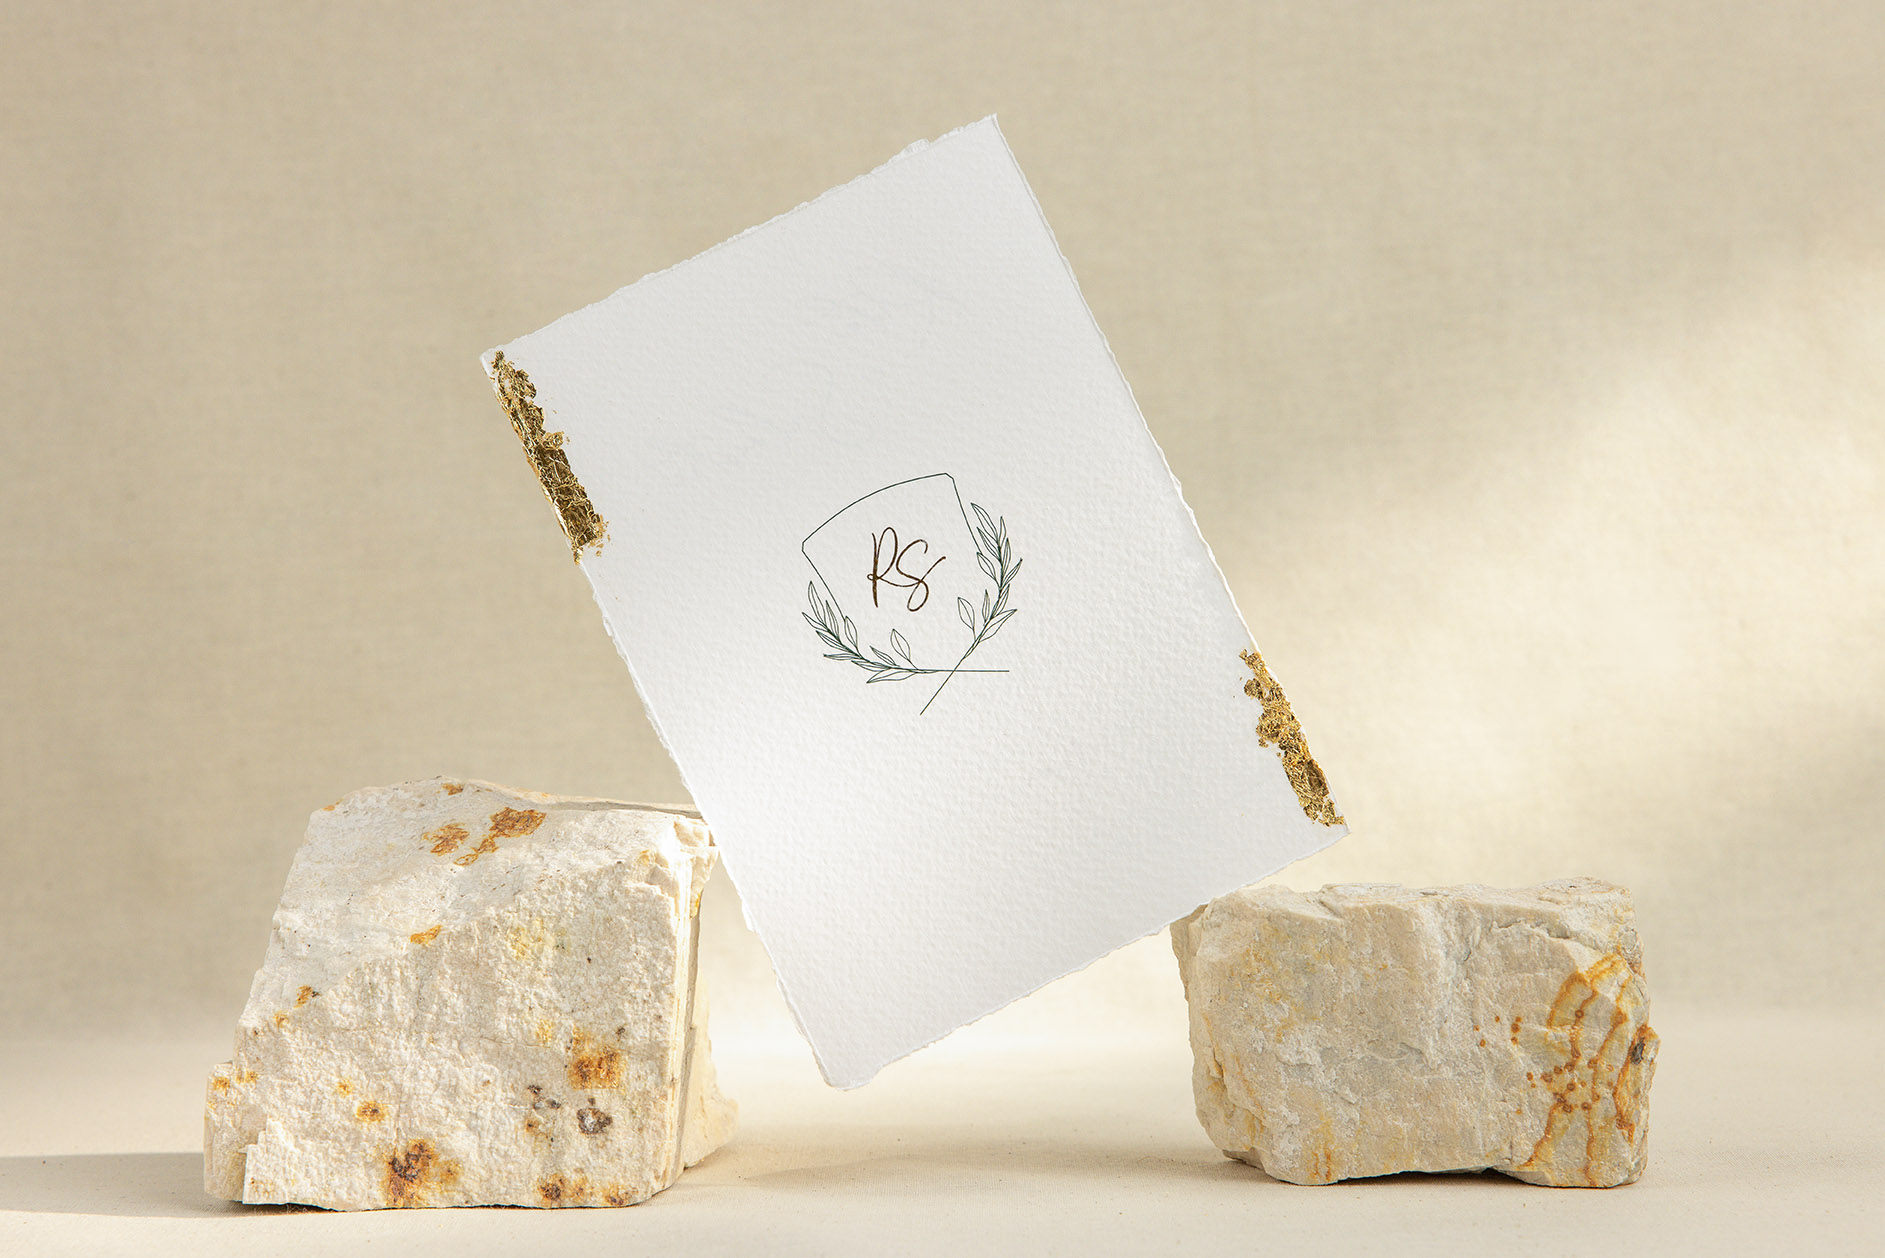 Convite de casamento em papel algodão com efeito rasgado, detalhes dourados e detalhes florias